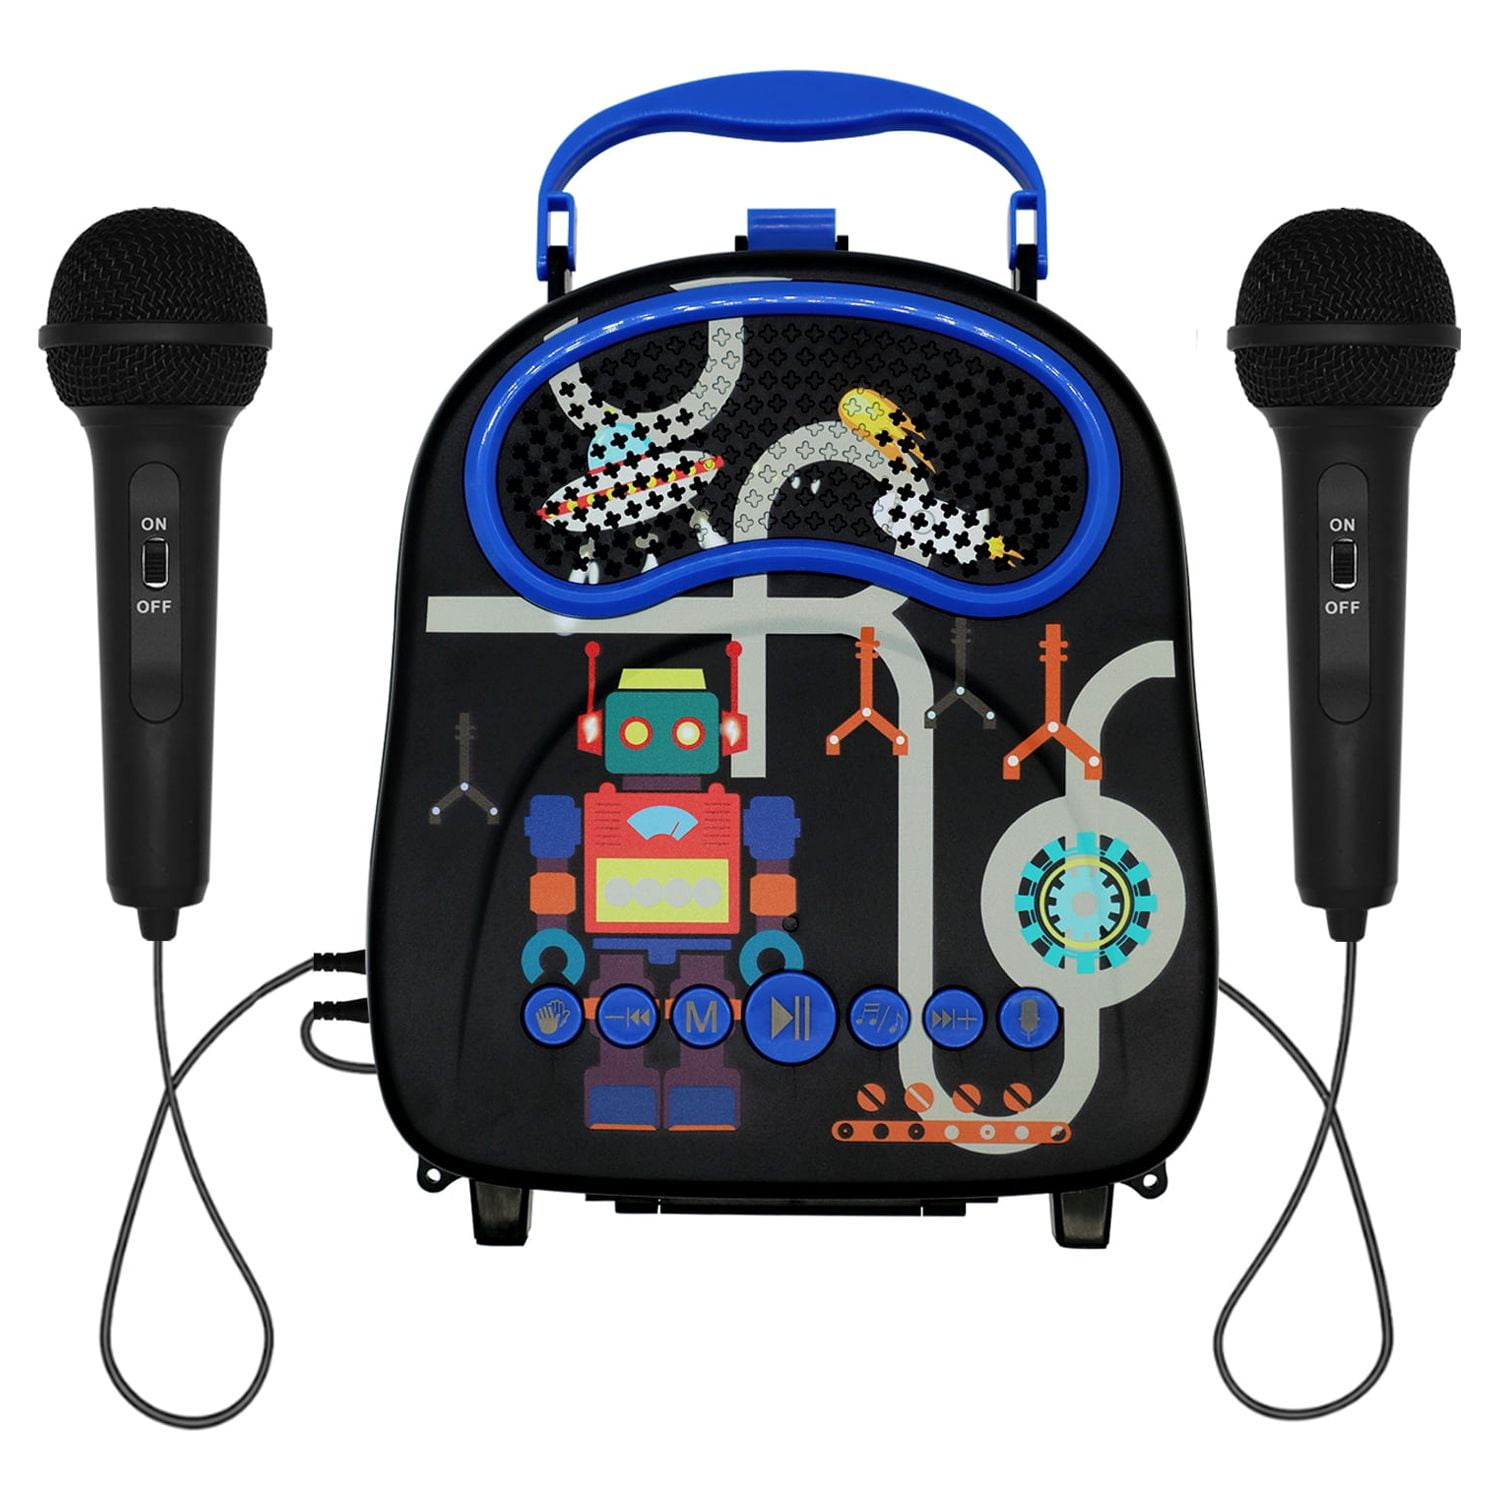 Kakutoy Kids Karaoke Machine for Boys with 2 Microphones Portable Toddler  Singing Toy Children Karaoke Speaker for Birthday Festival Gift